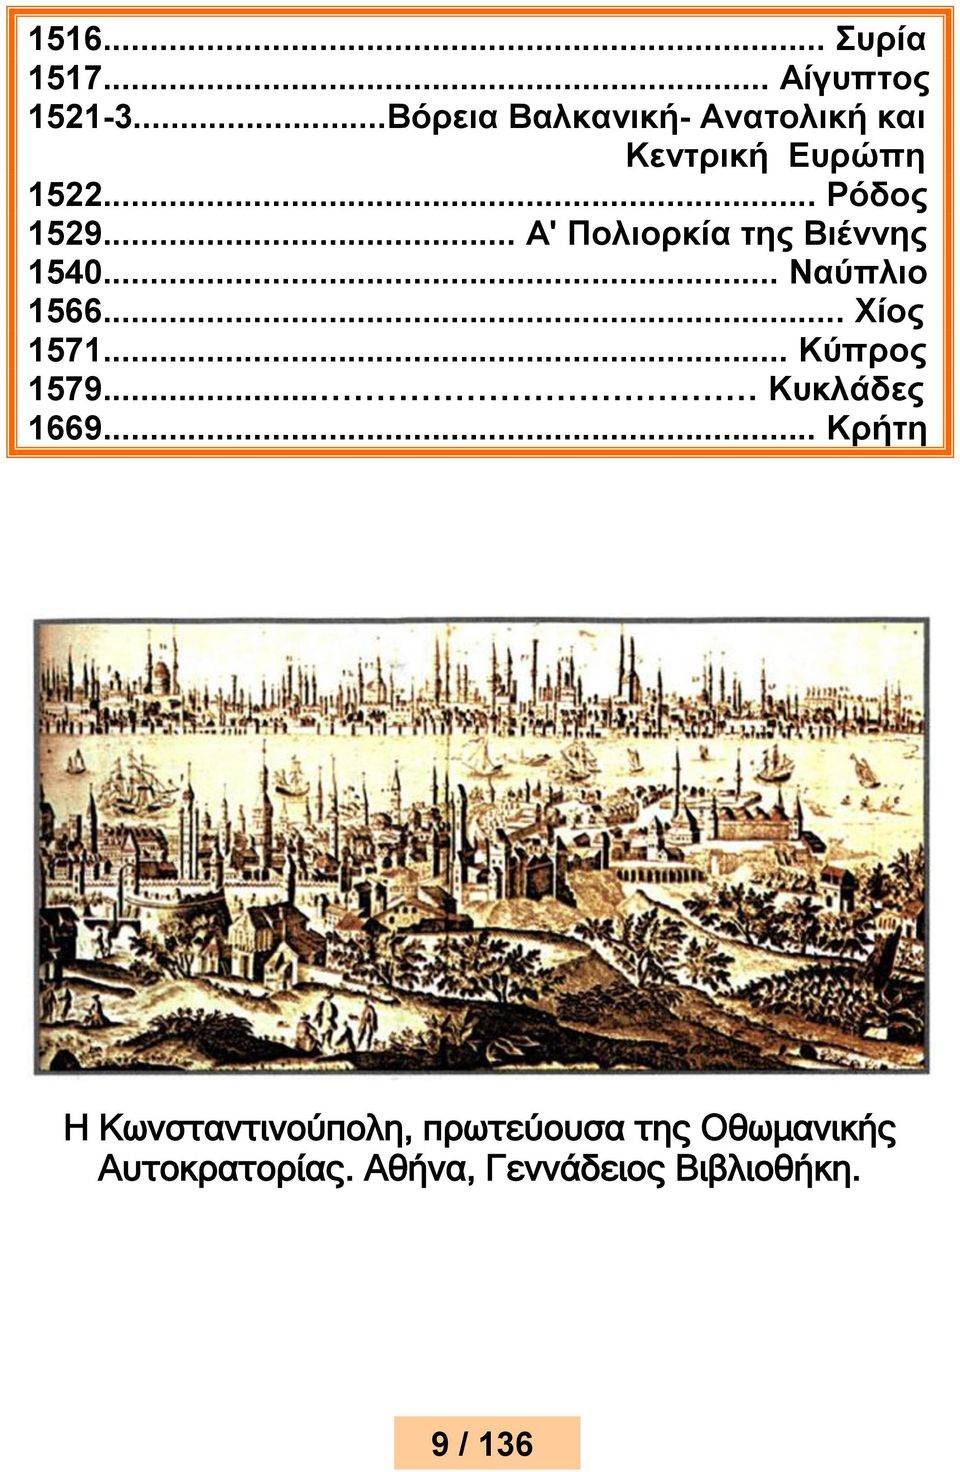 .. Α' Πολιορκία της Βιέννης 1540... Ναύπλιο 1566... Χίος 1571... Κύπρος 1579.